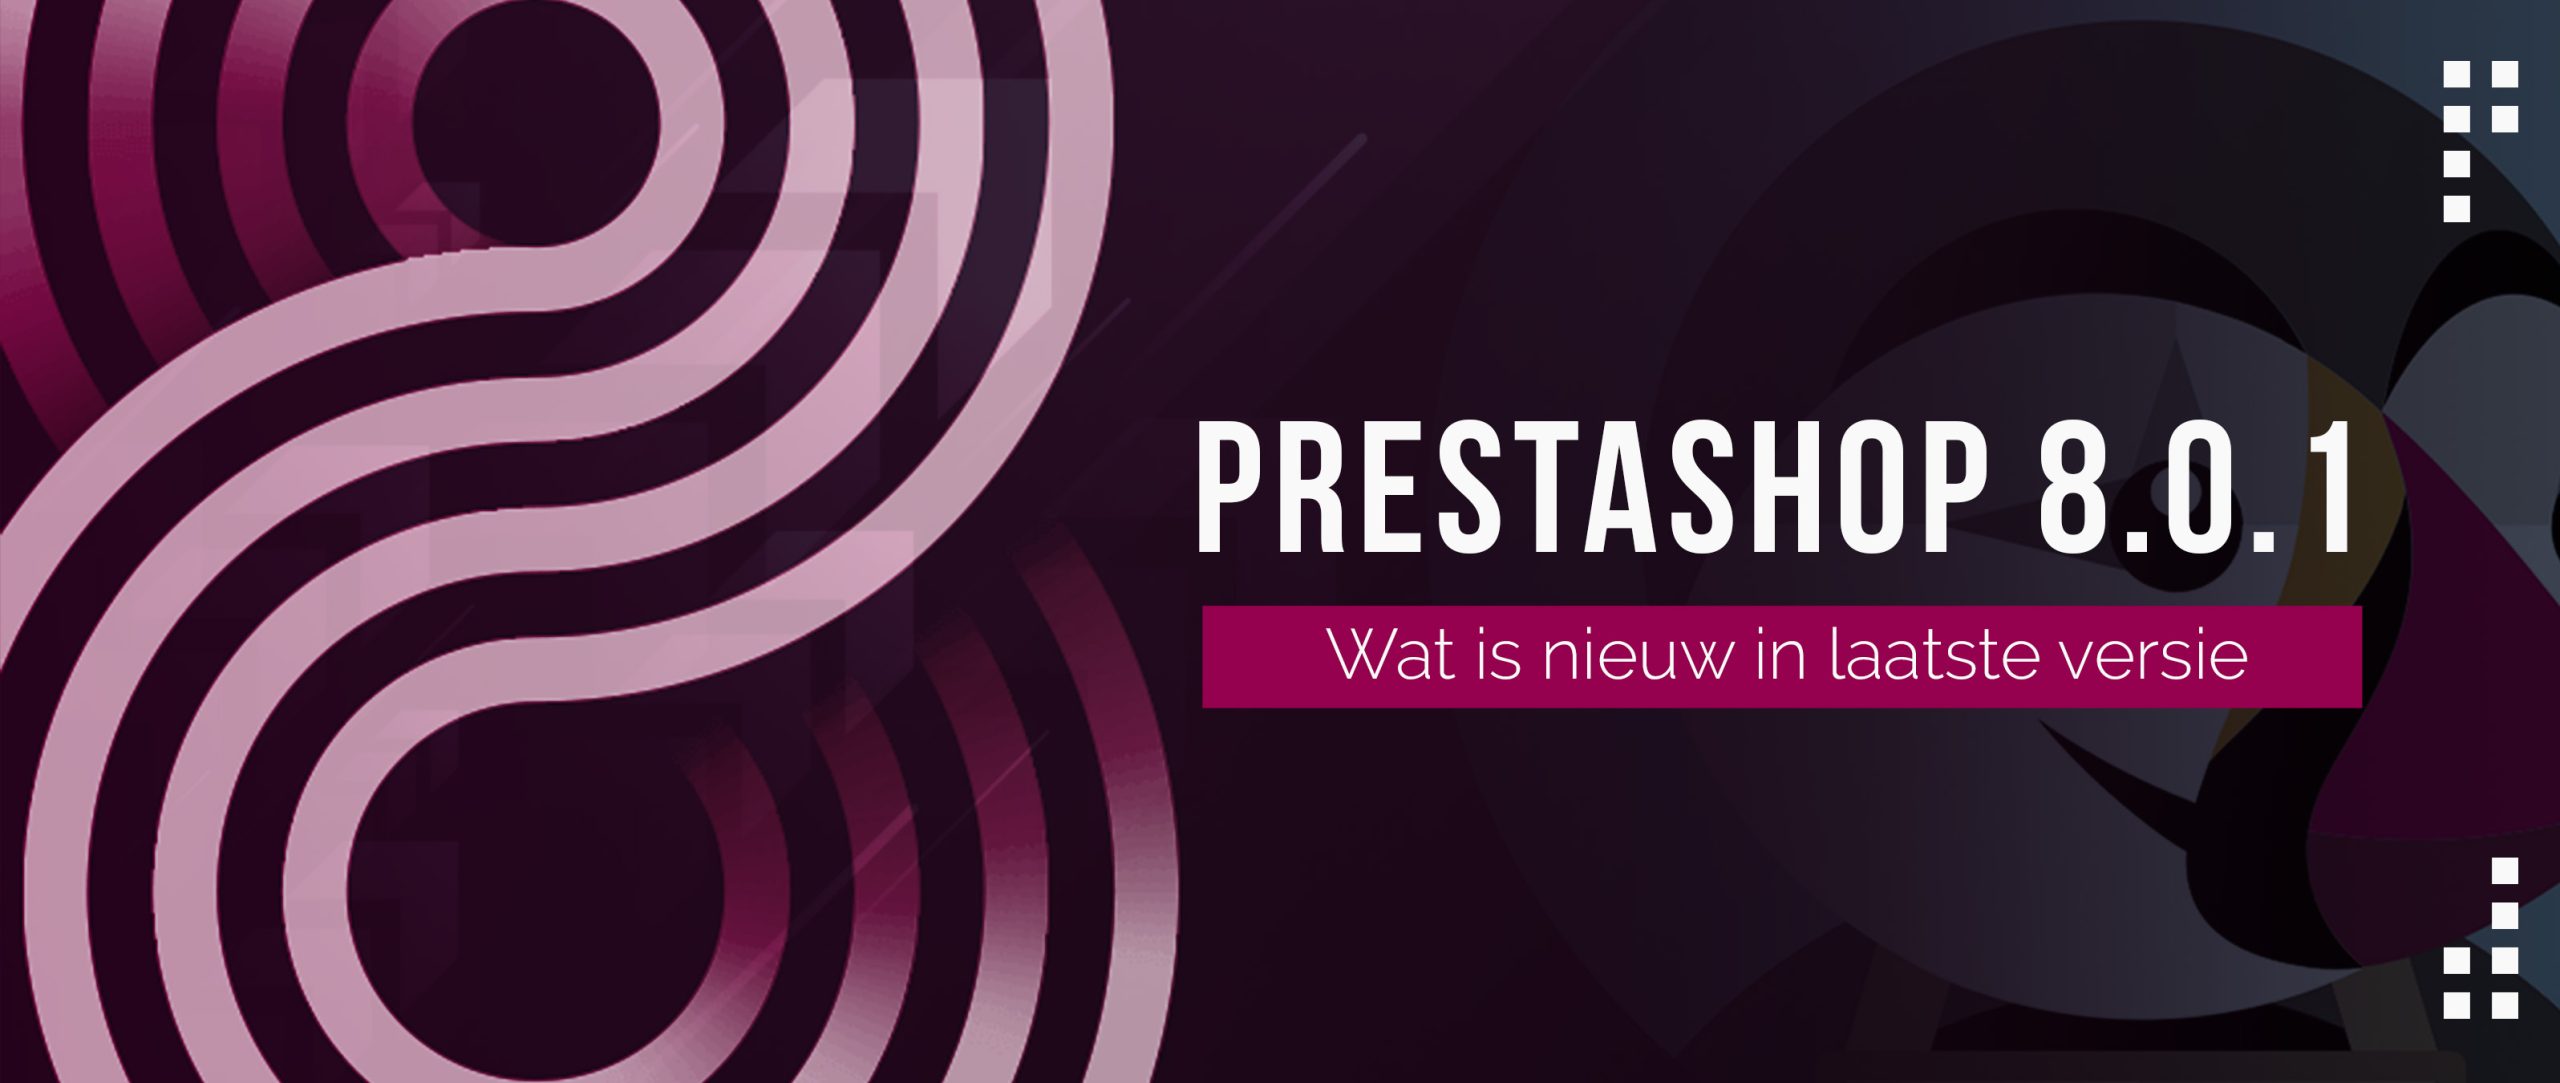 Wat is nieuw in Prestashop 8.0.1 en hoe haalt u er het meeste uit?